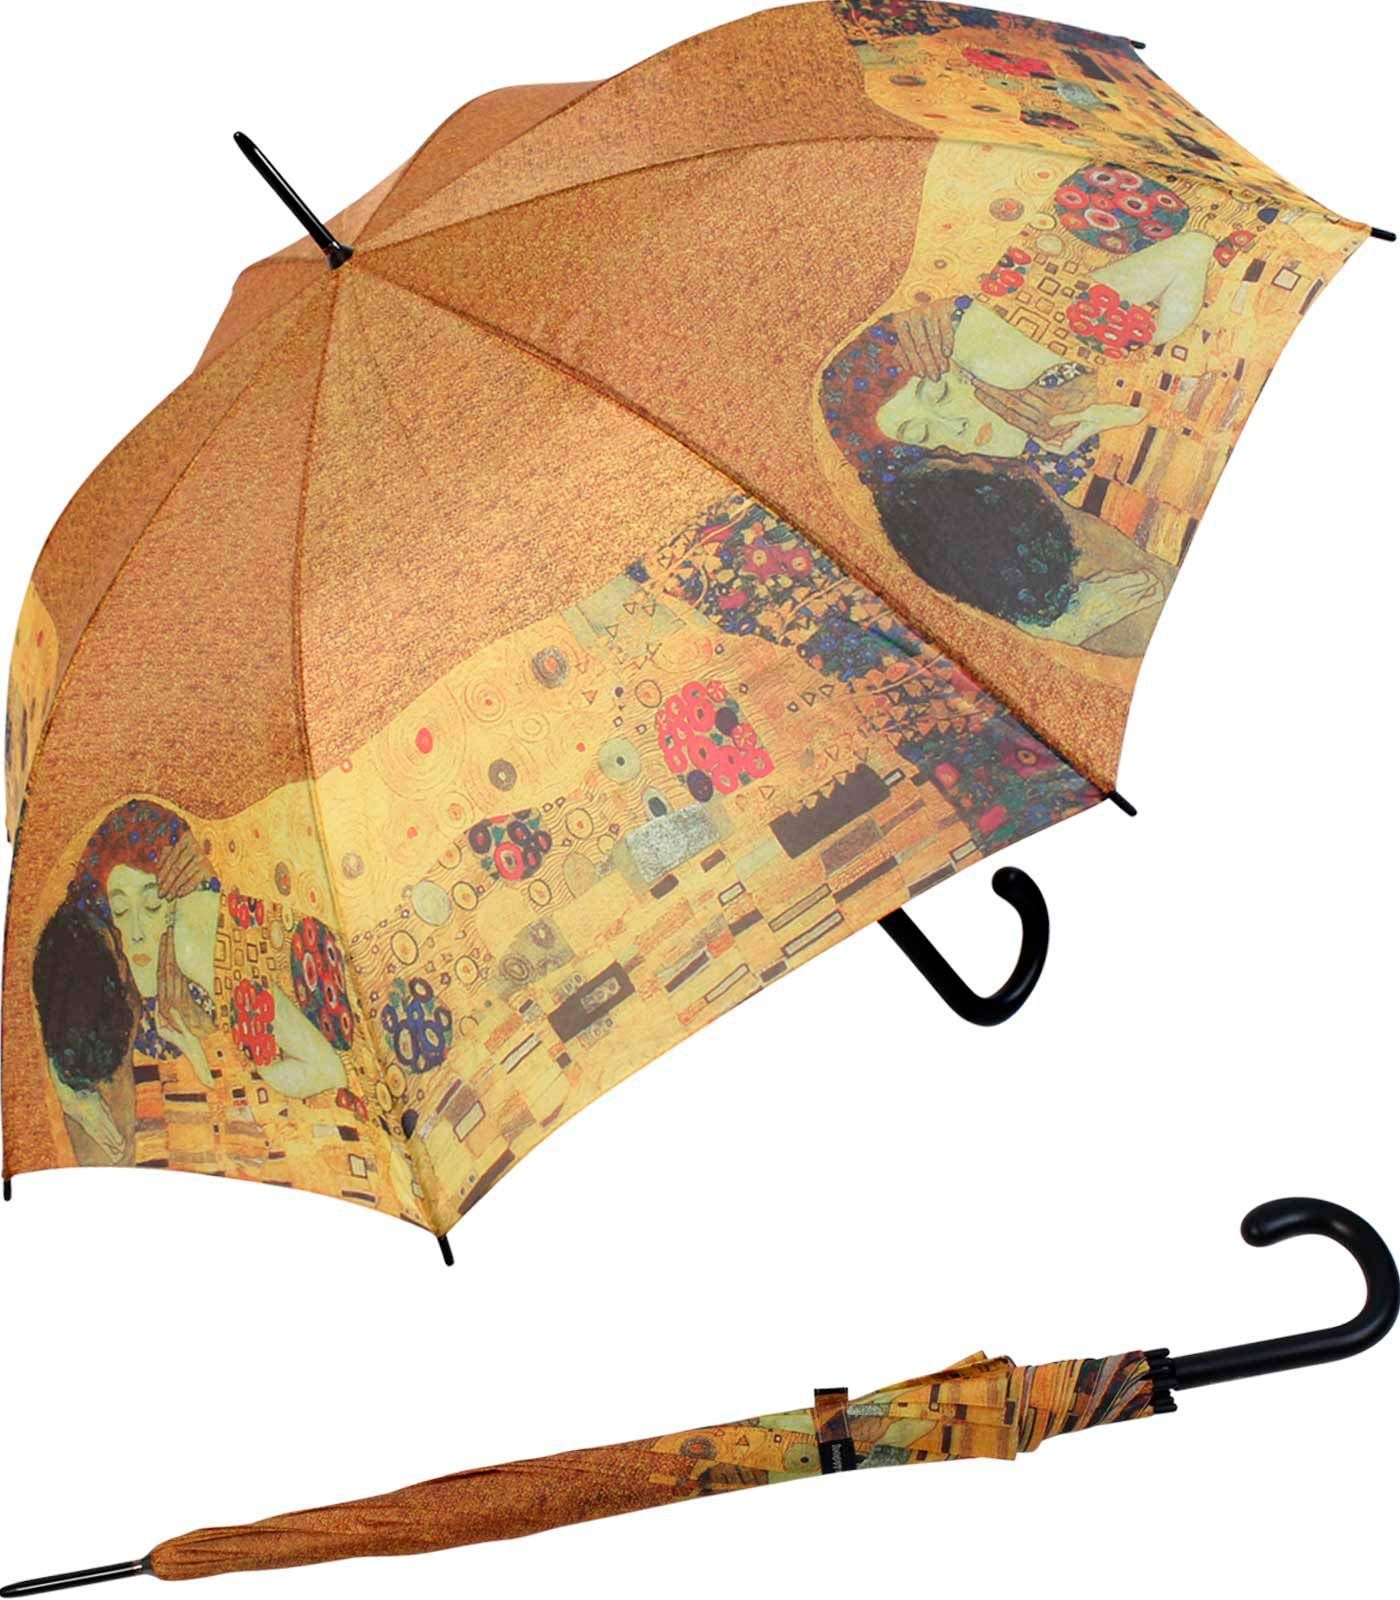 Langregenschirm HAPPY klein Künstlermotiv der Klimt großer Regenschirm für Motiv Damen, Kuss RAIN mit